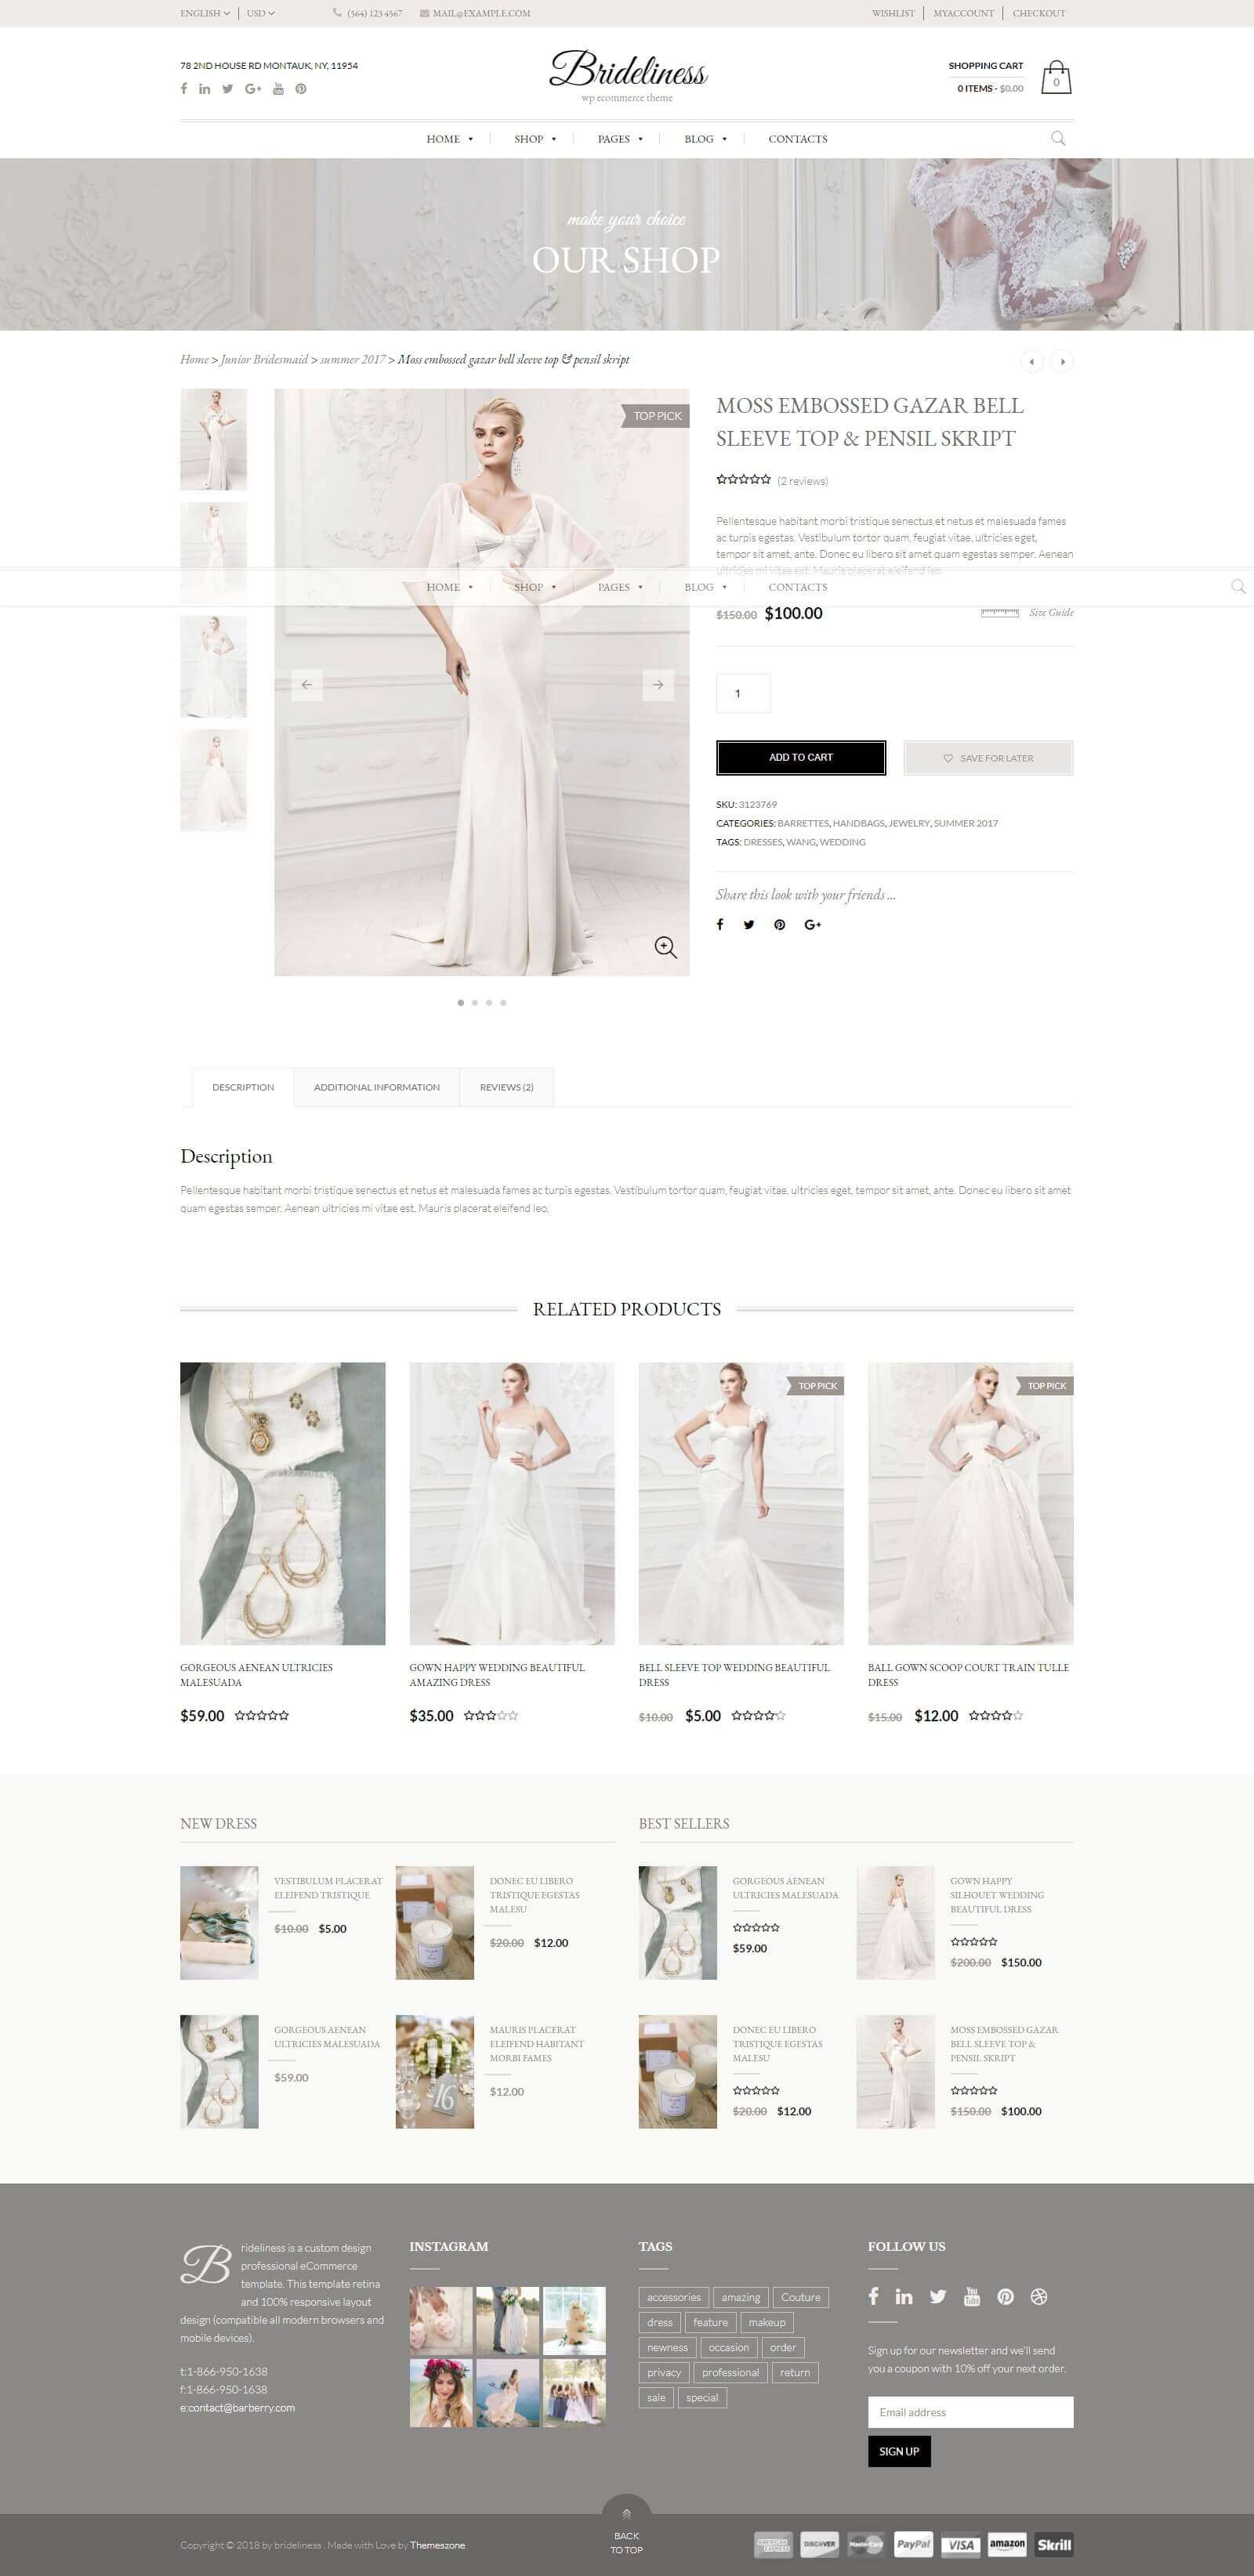 Menu sản phẩm, dịch vụ của mẫu website cho thuê áo cưới